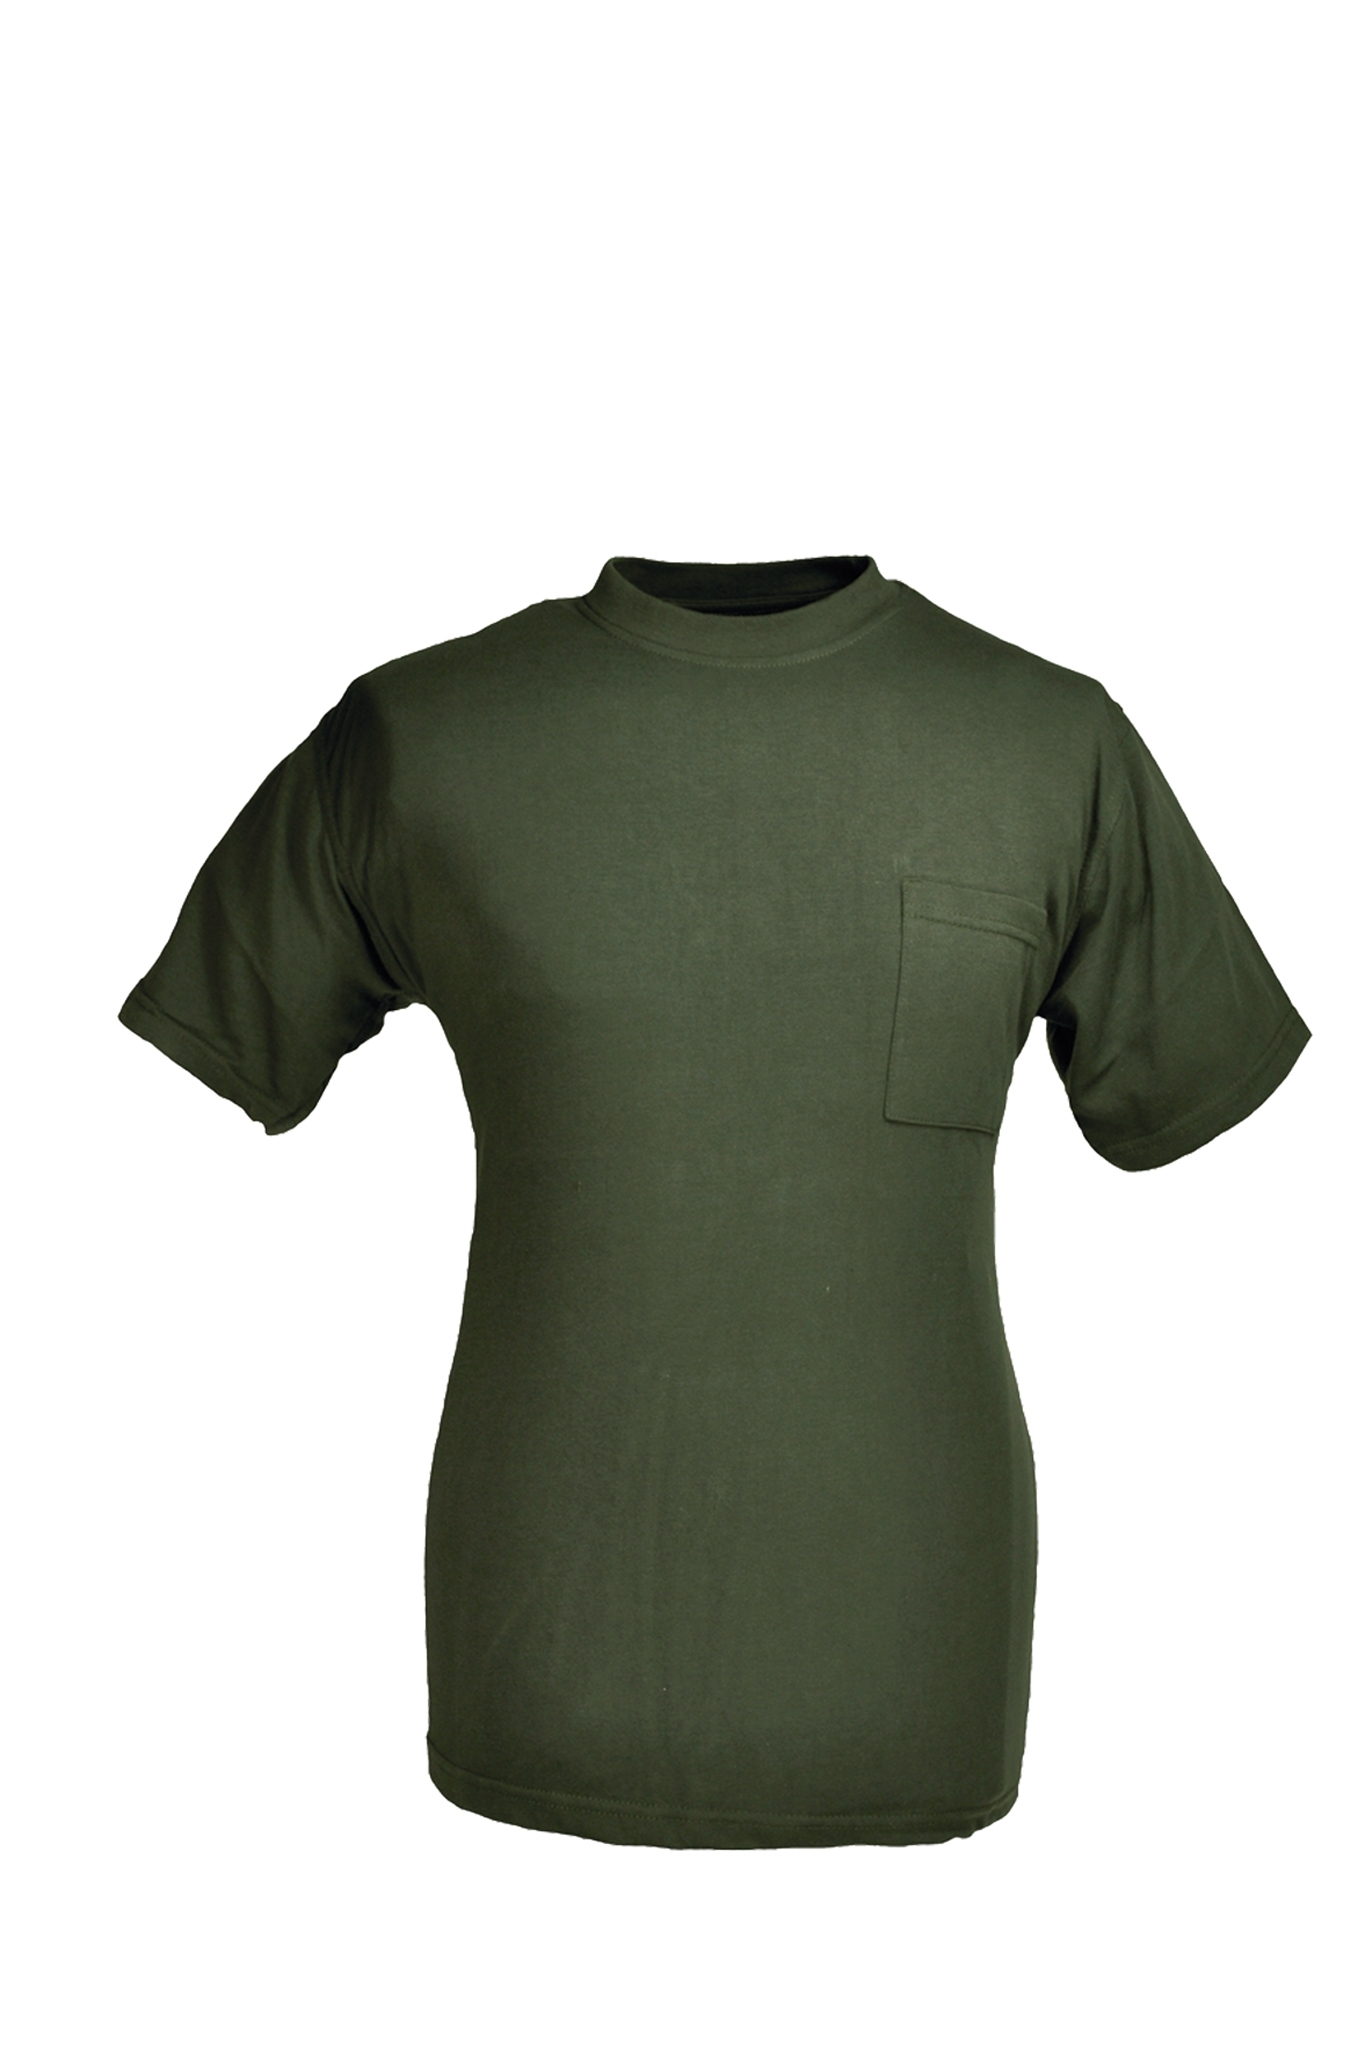 Rundhals T-Shirt oliv Gr.XXL 10227843